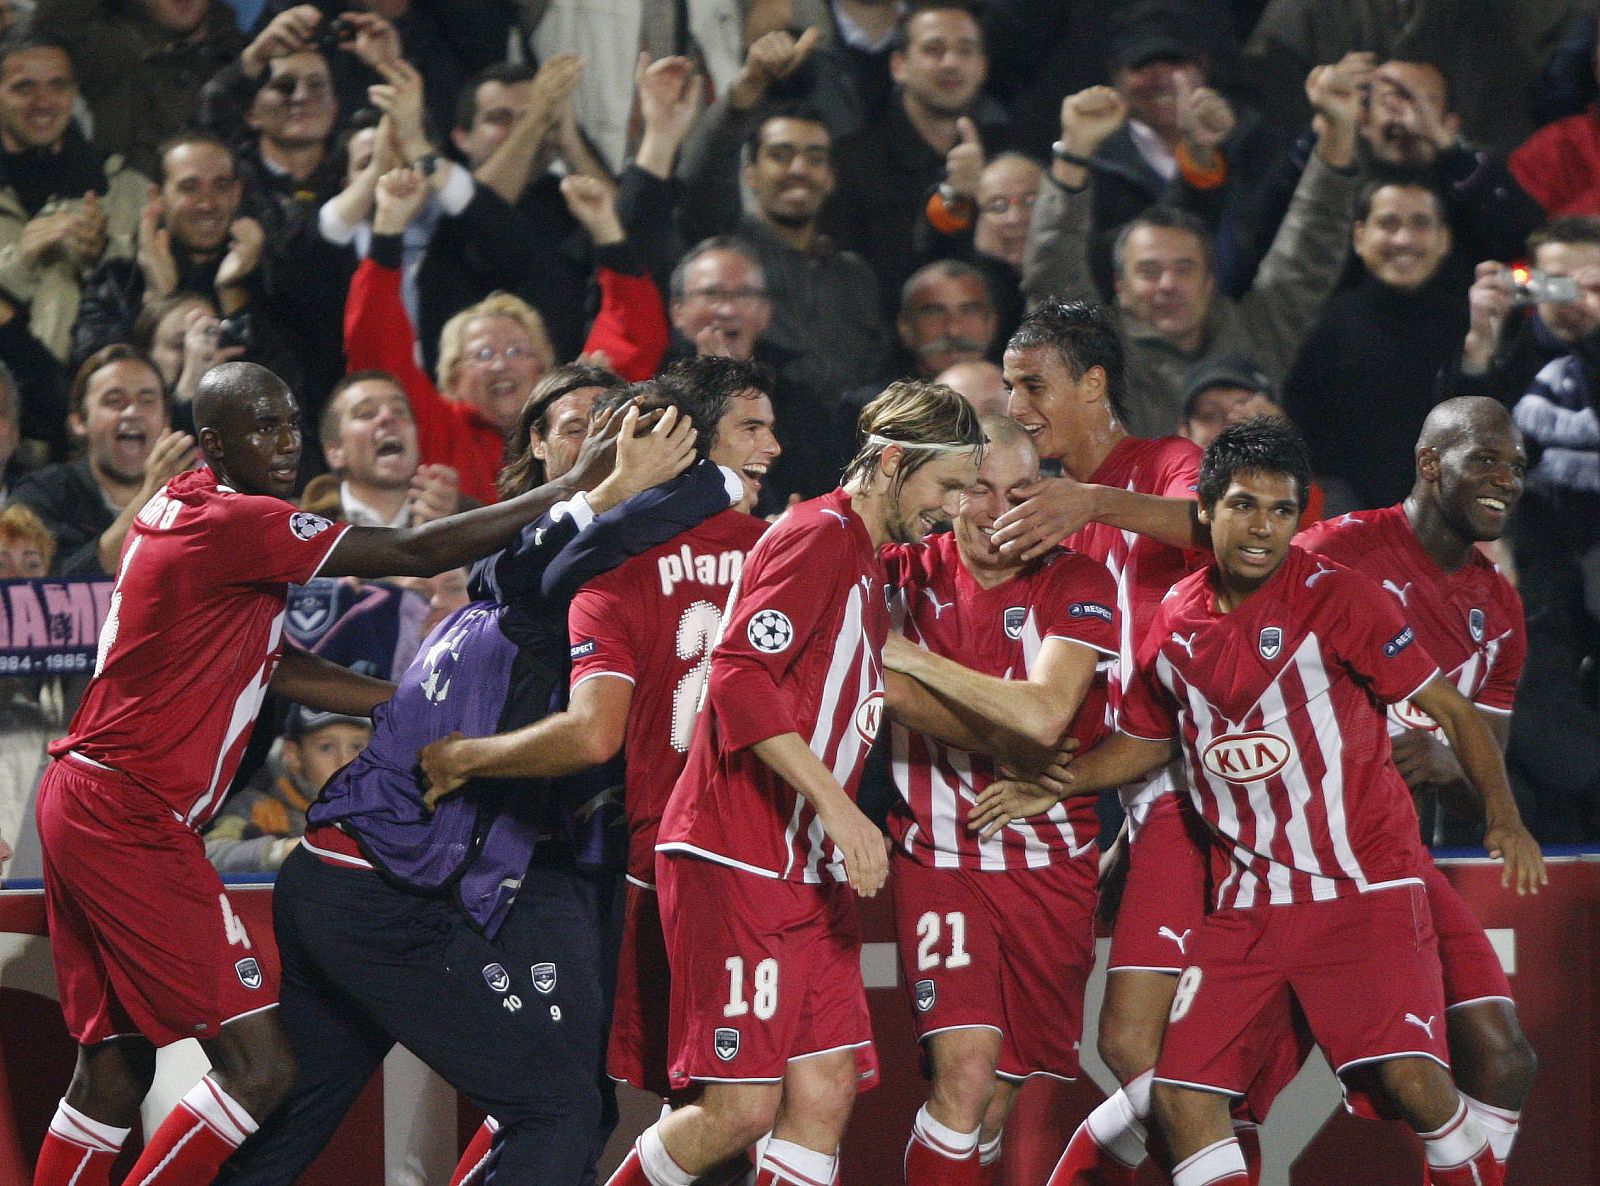 Los jugadores del Girondins celebran el gol marcado ante el Bayern Munich.